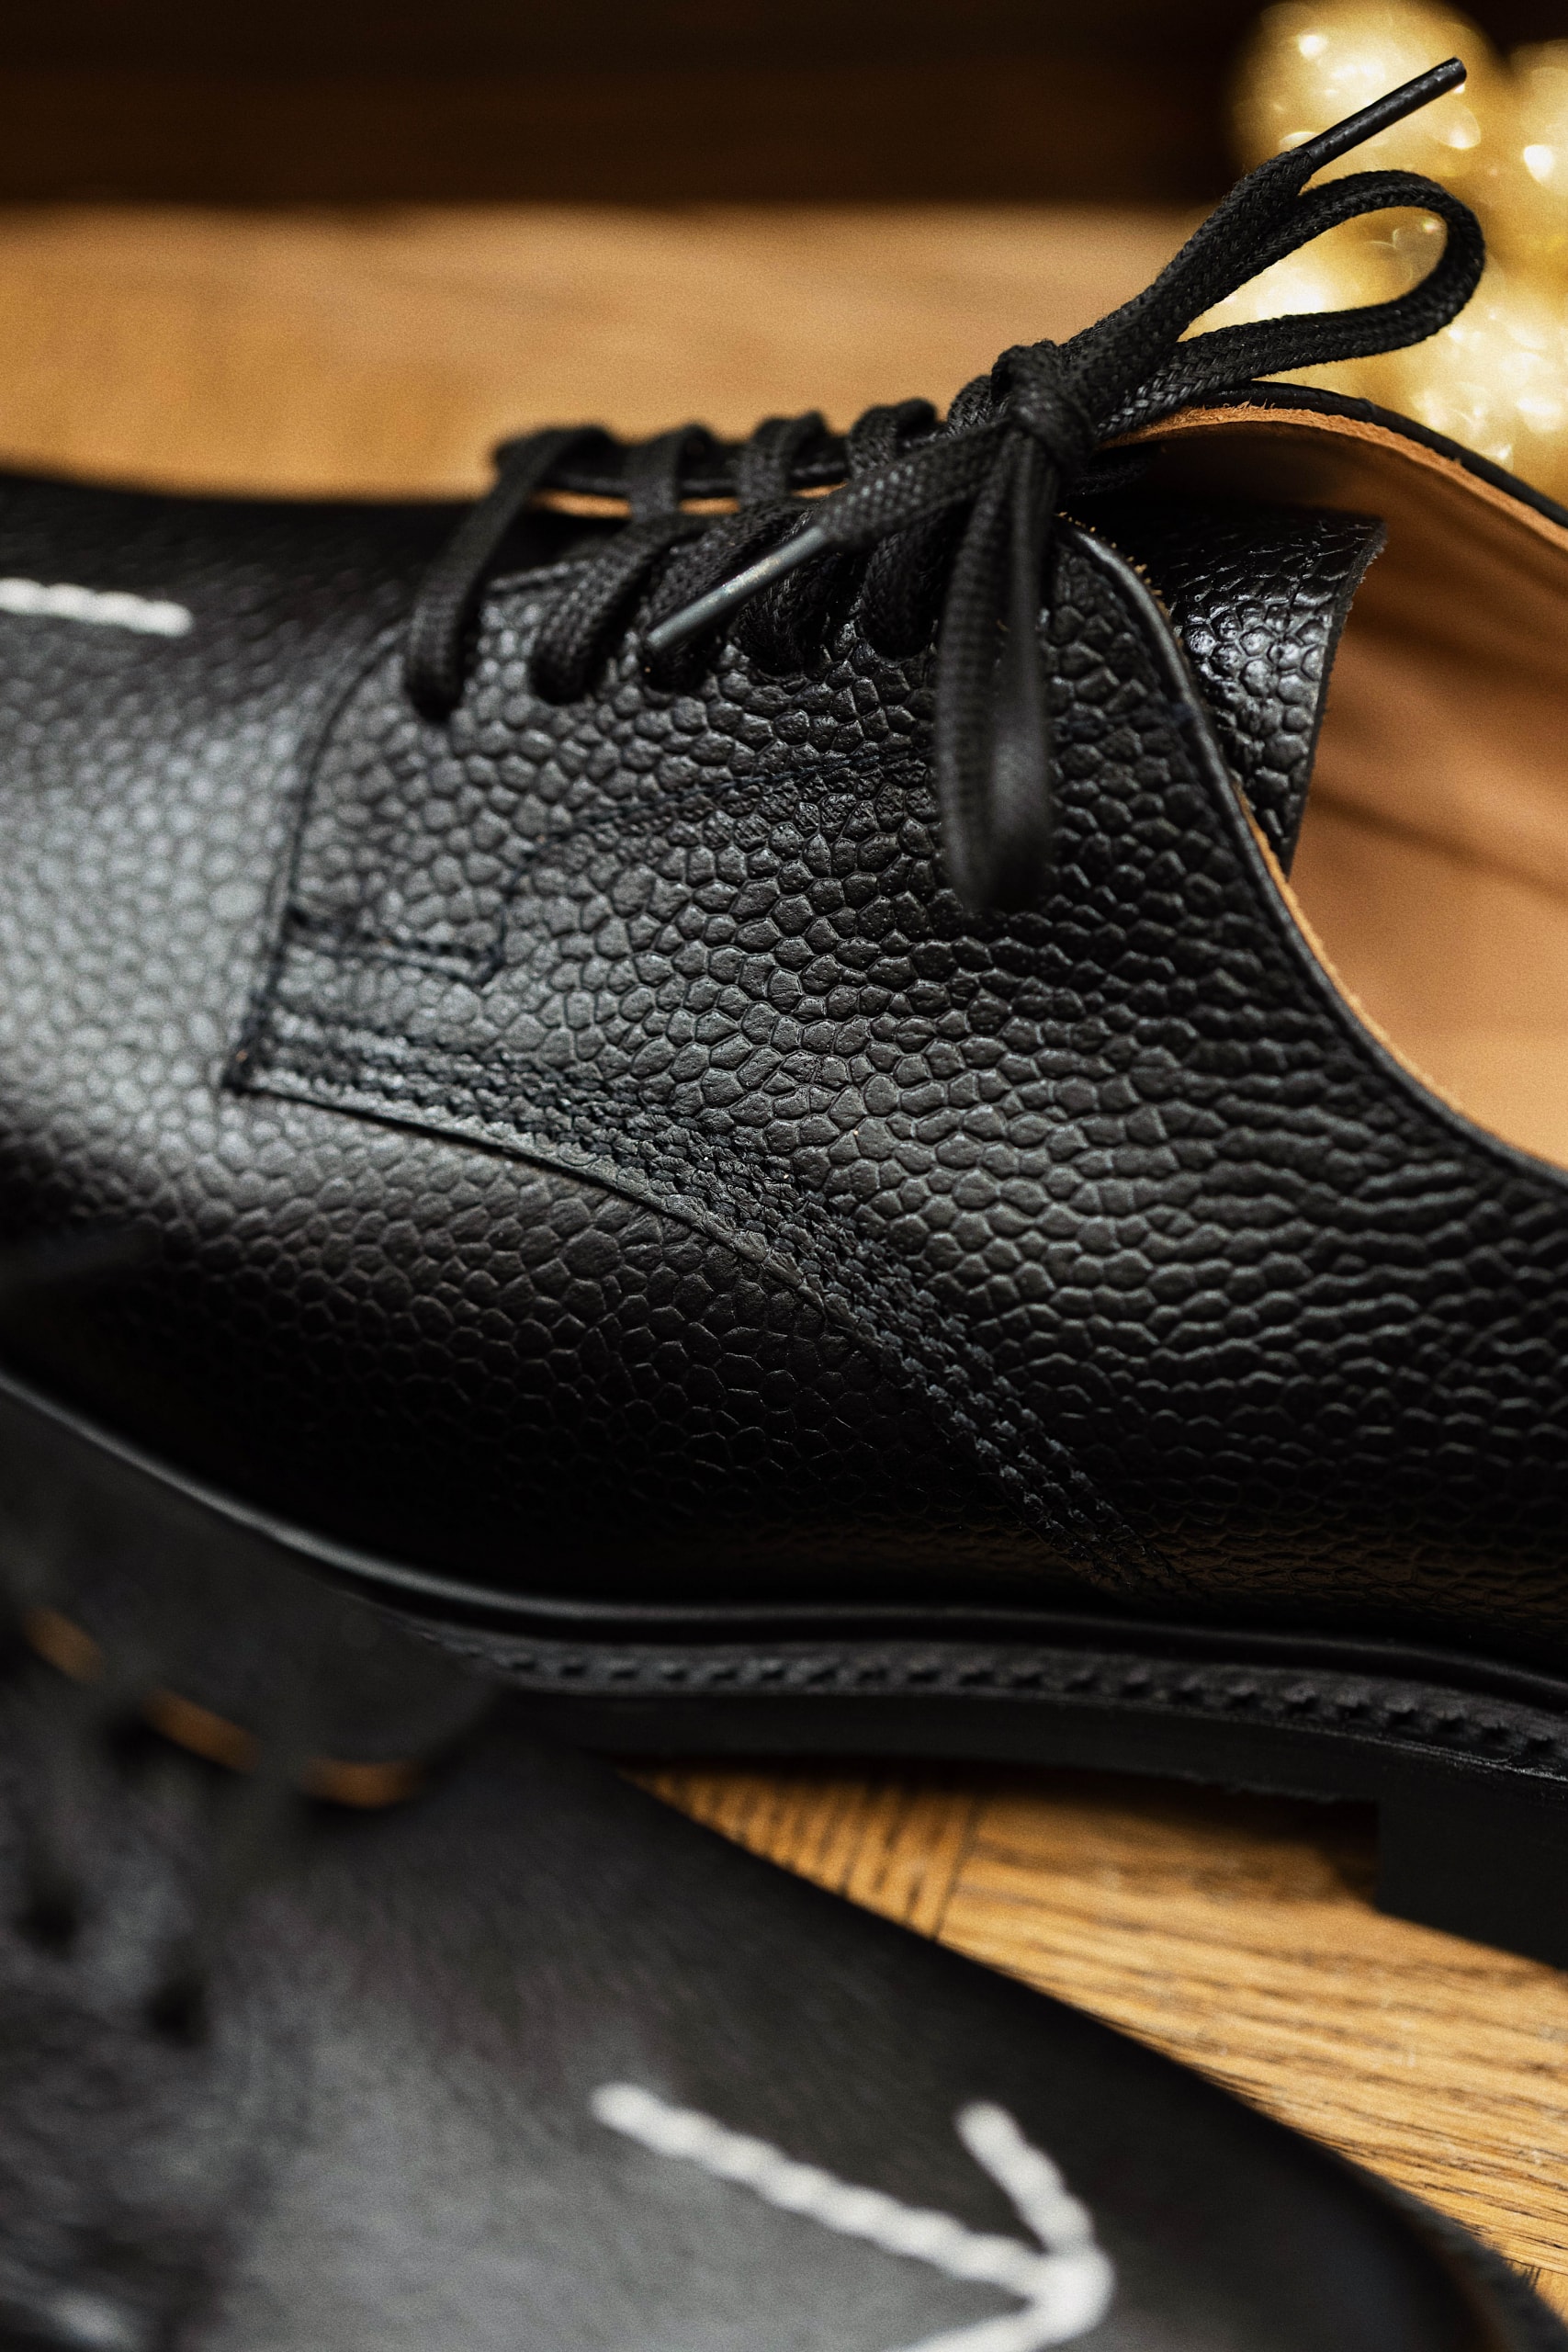 英國經典皮鞋品牌 SANDERS 聯乘本地皮鞋名所 HOAX 